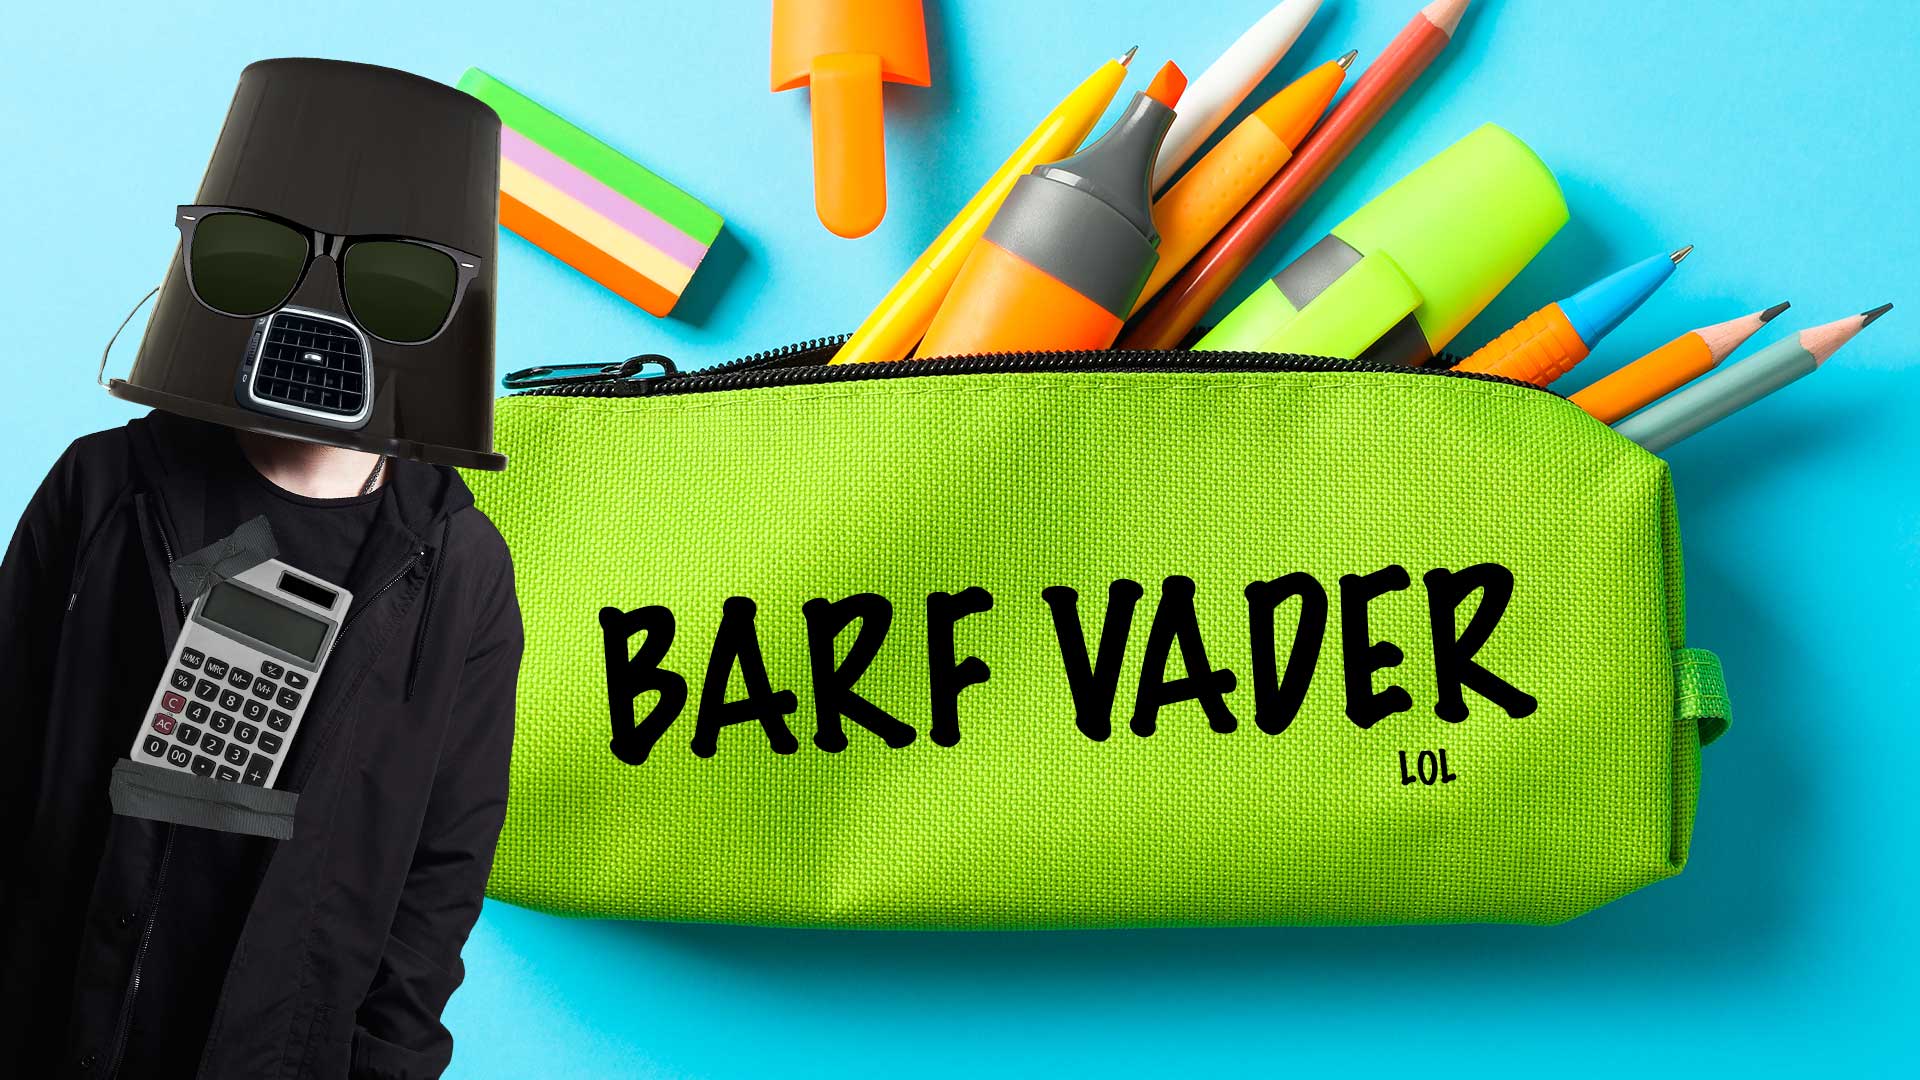 Darth Vader and a pencil case